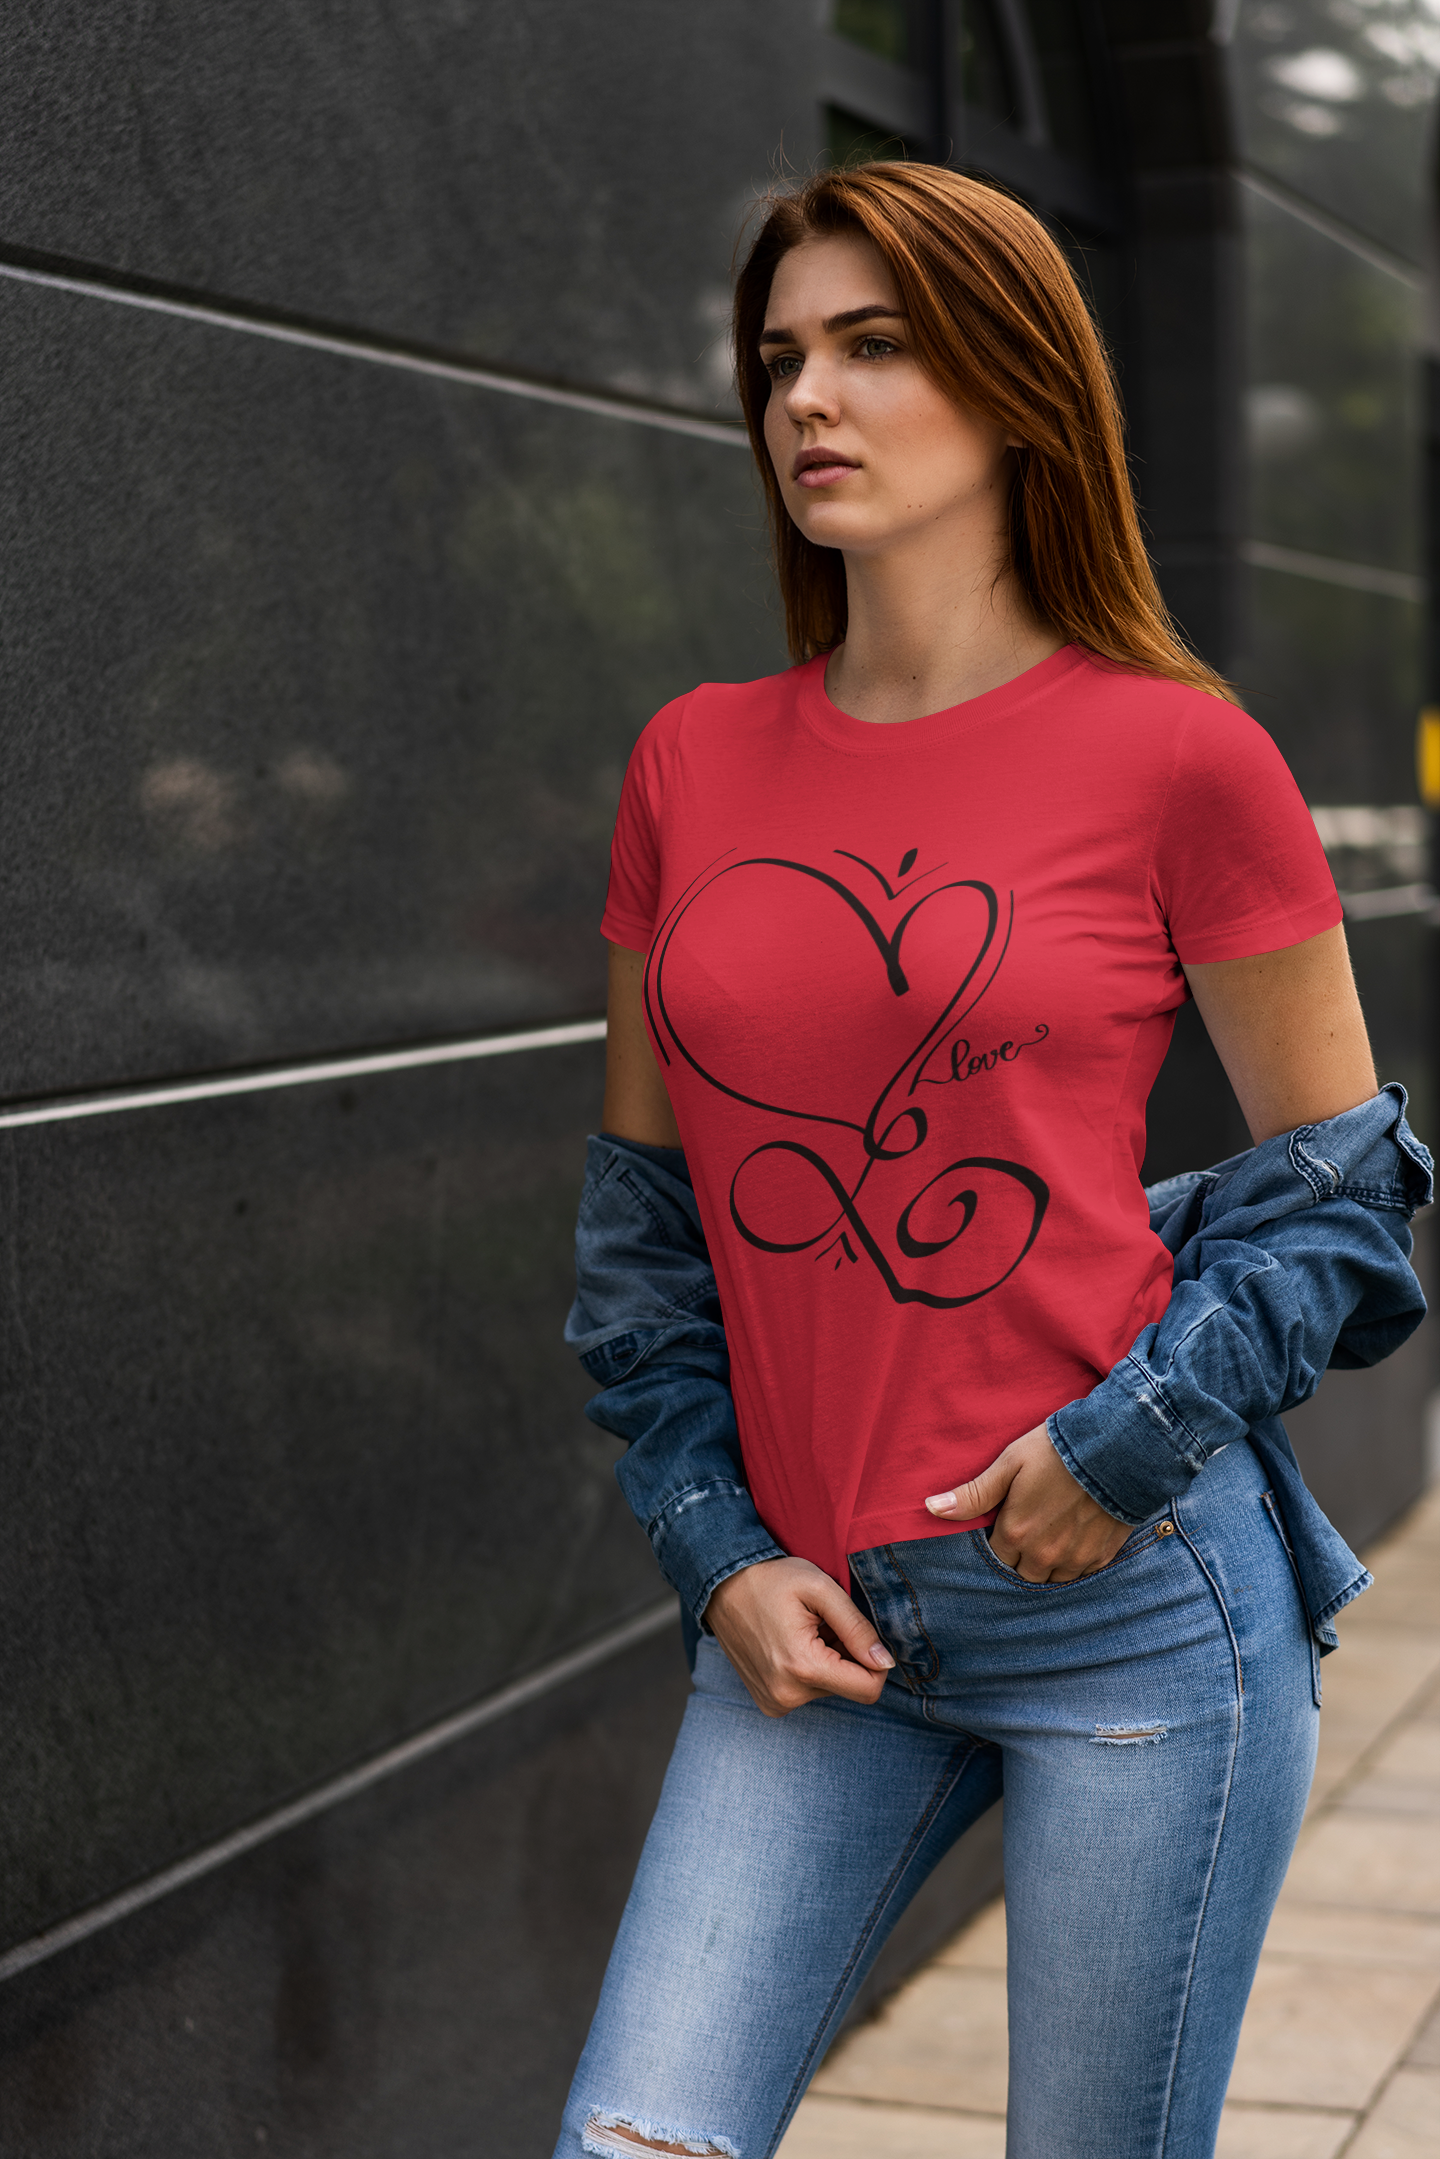 "Calligraphy Heart" Women's short sleeve t-shirt